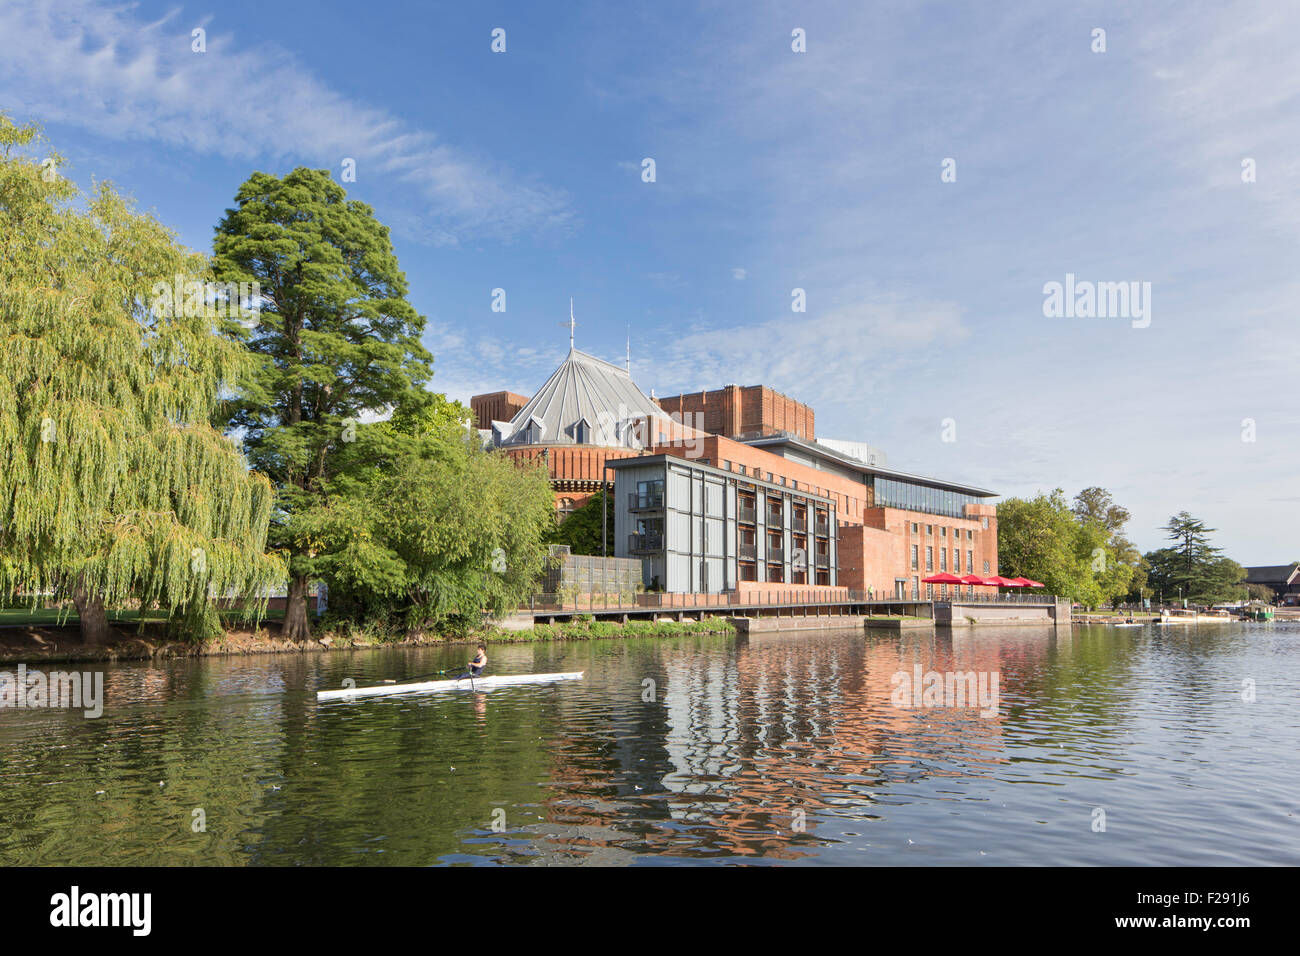 Il Royal Shakespeare Theatre, sulle rive del fiume Avon, Stratford upon Avon, Warwickshire, Inghilterra, Regno Unito Foto Stock